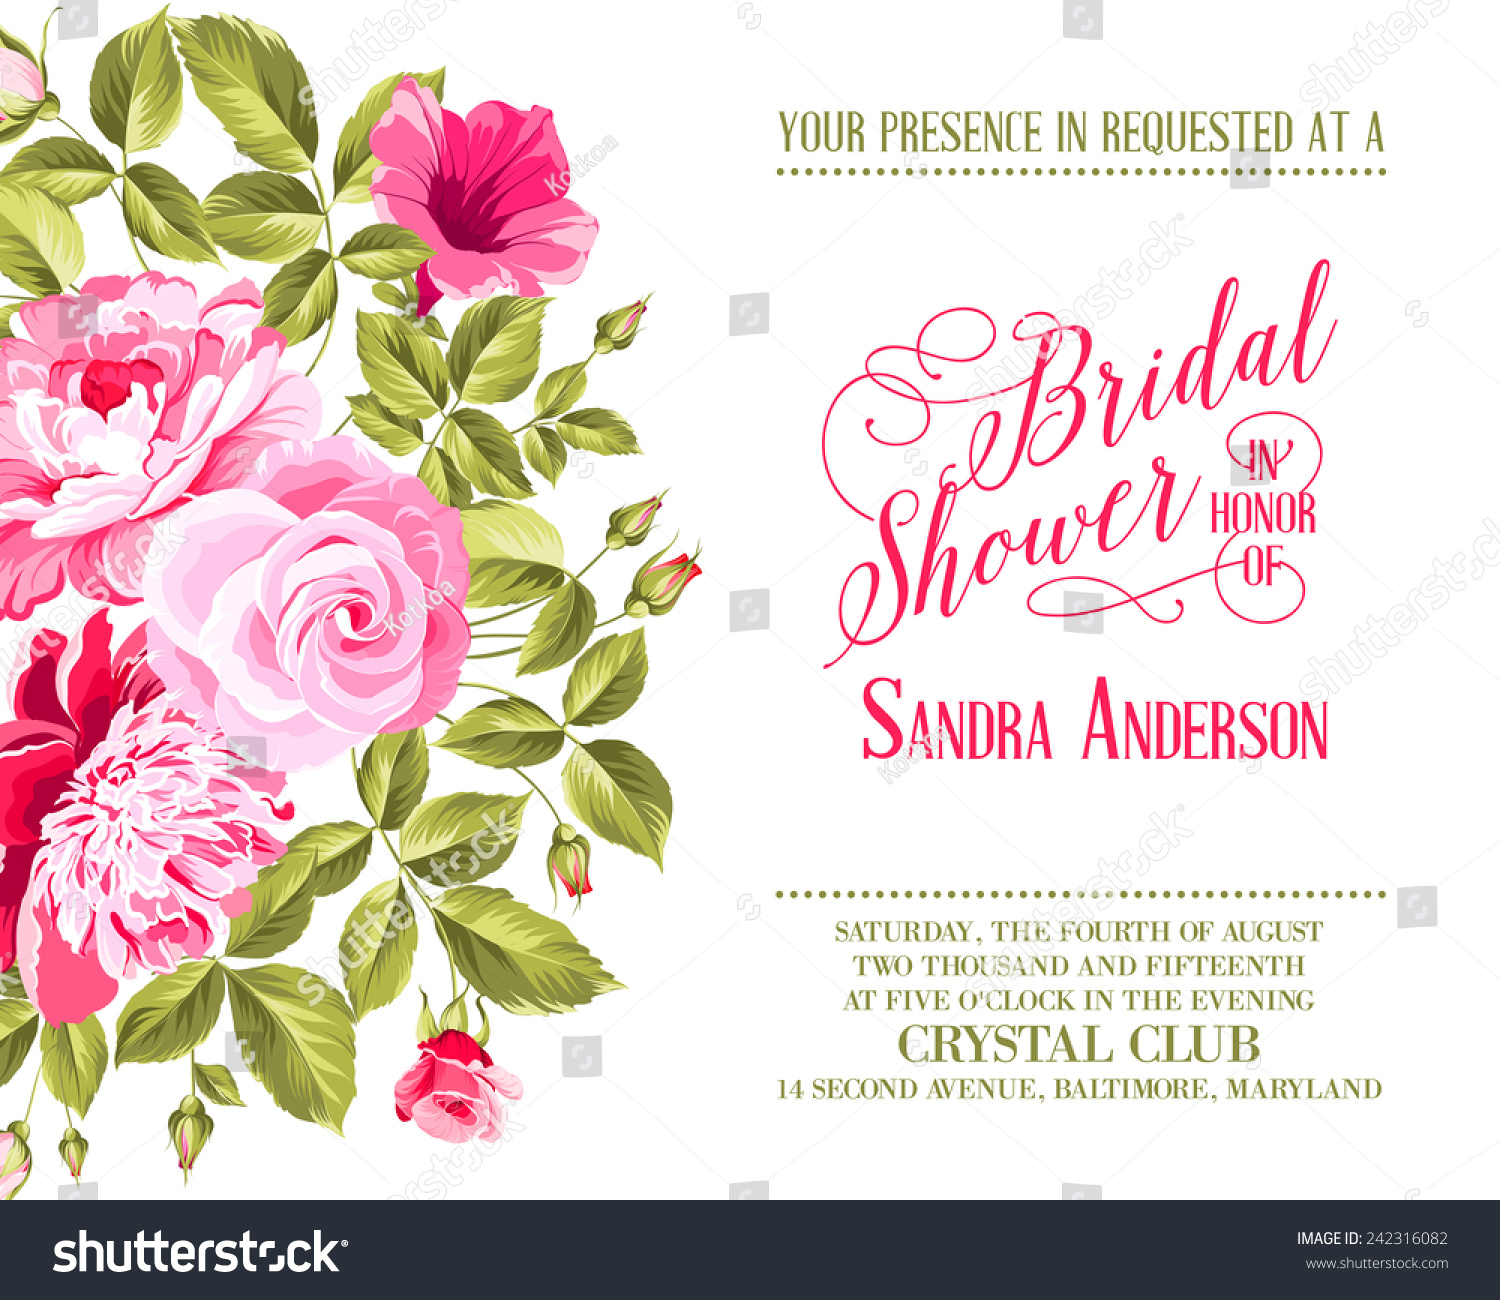 Bridal Shower Invitation Flowers Over White Stock Vector 242316082 ...